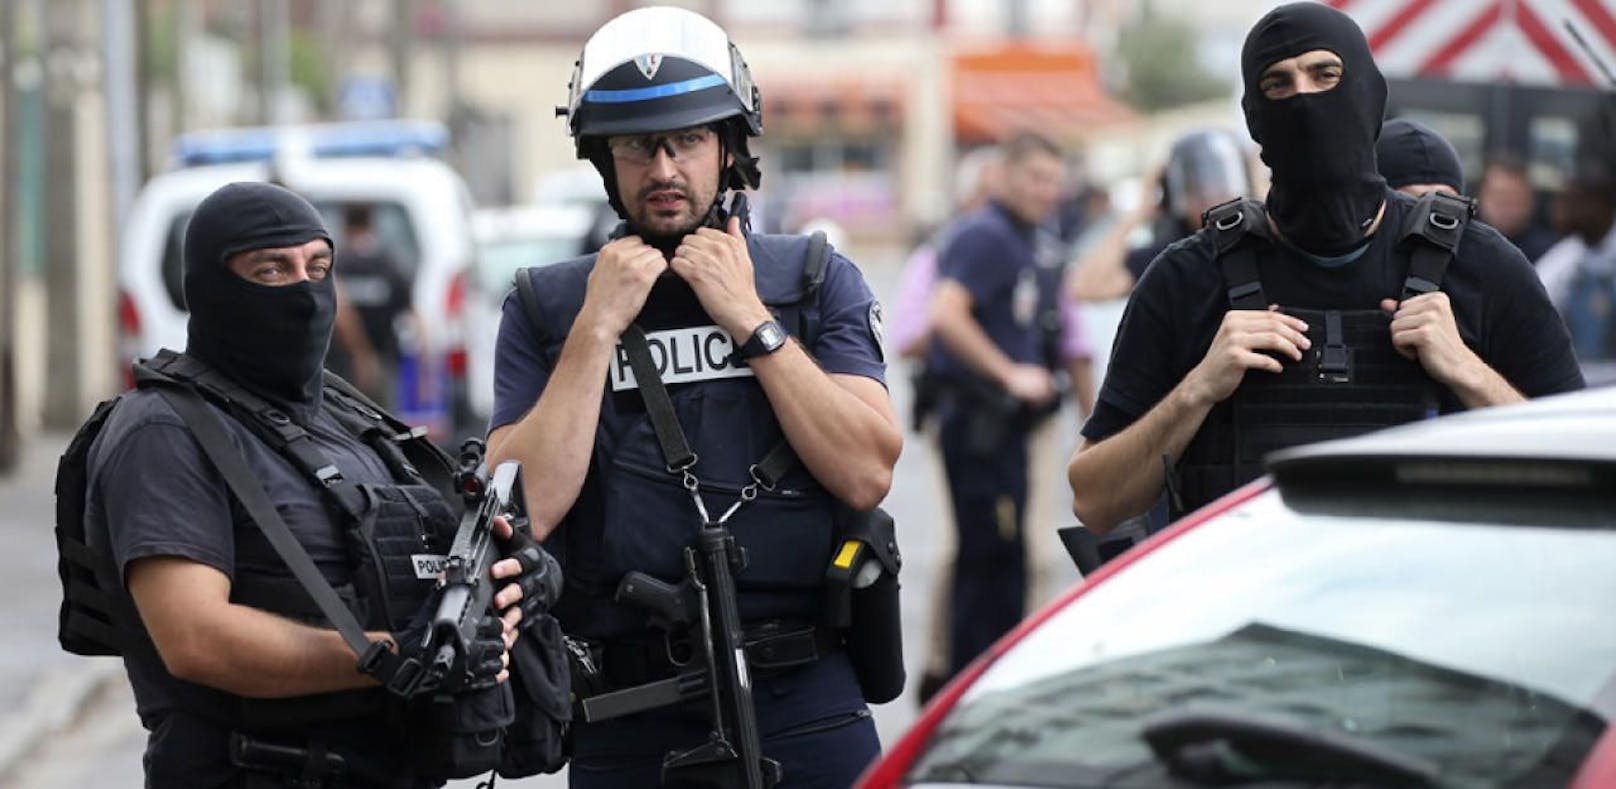 (Symbolbild) In Frankreich wurden 9 Verdächtige verhaftet.